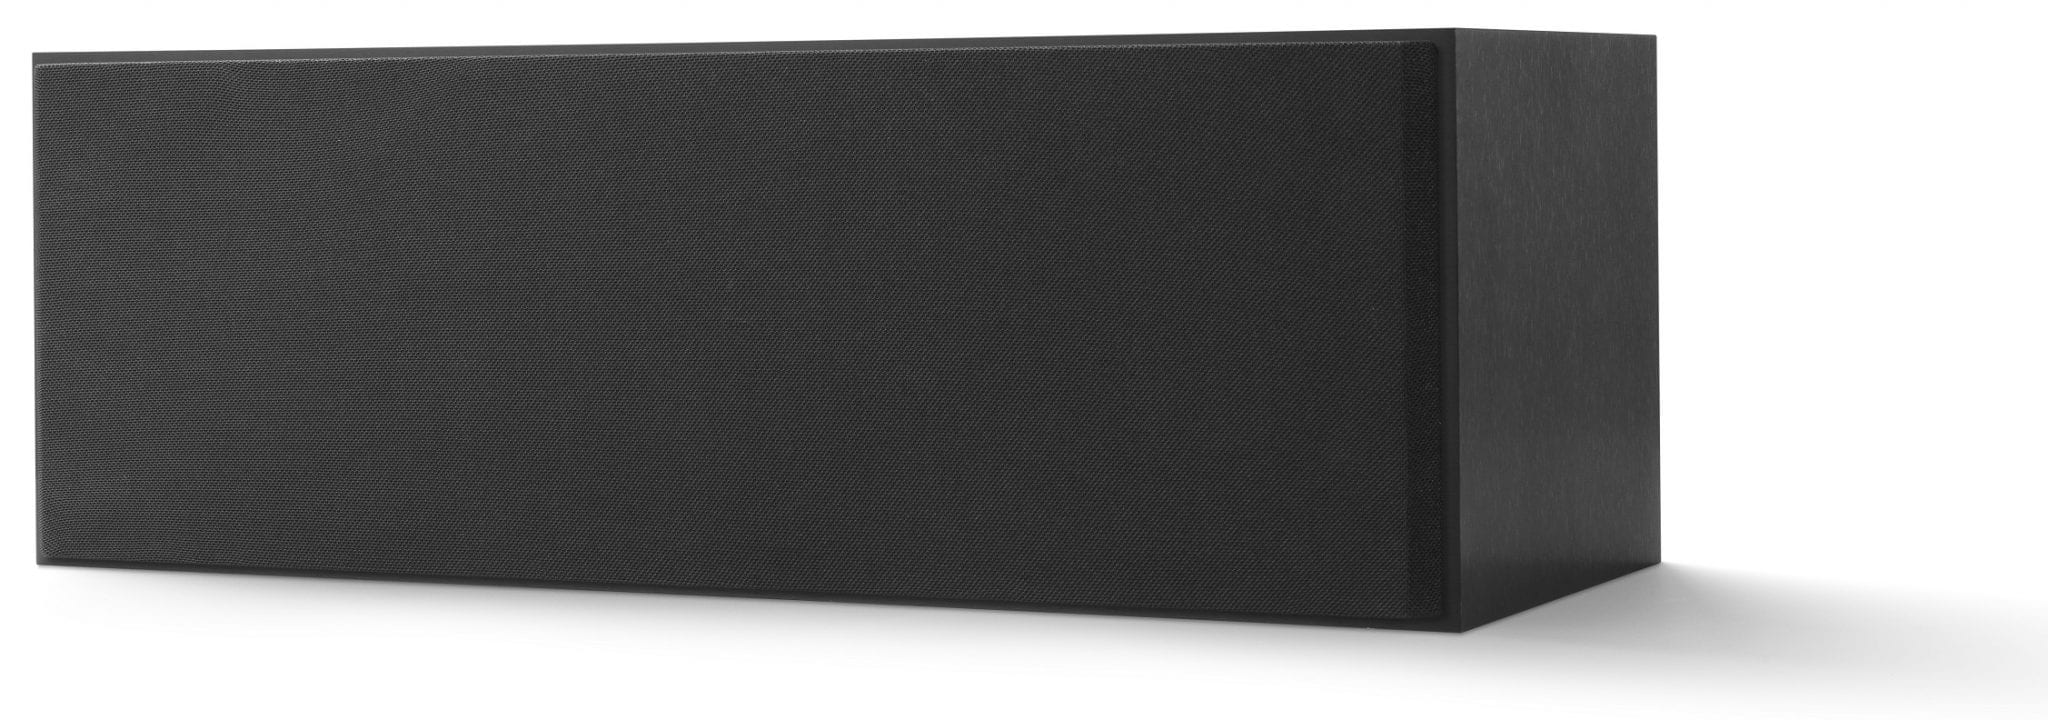 KEF Q250c zwart - zij frontaanzicht met grill - Center speaker